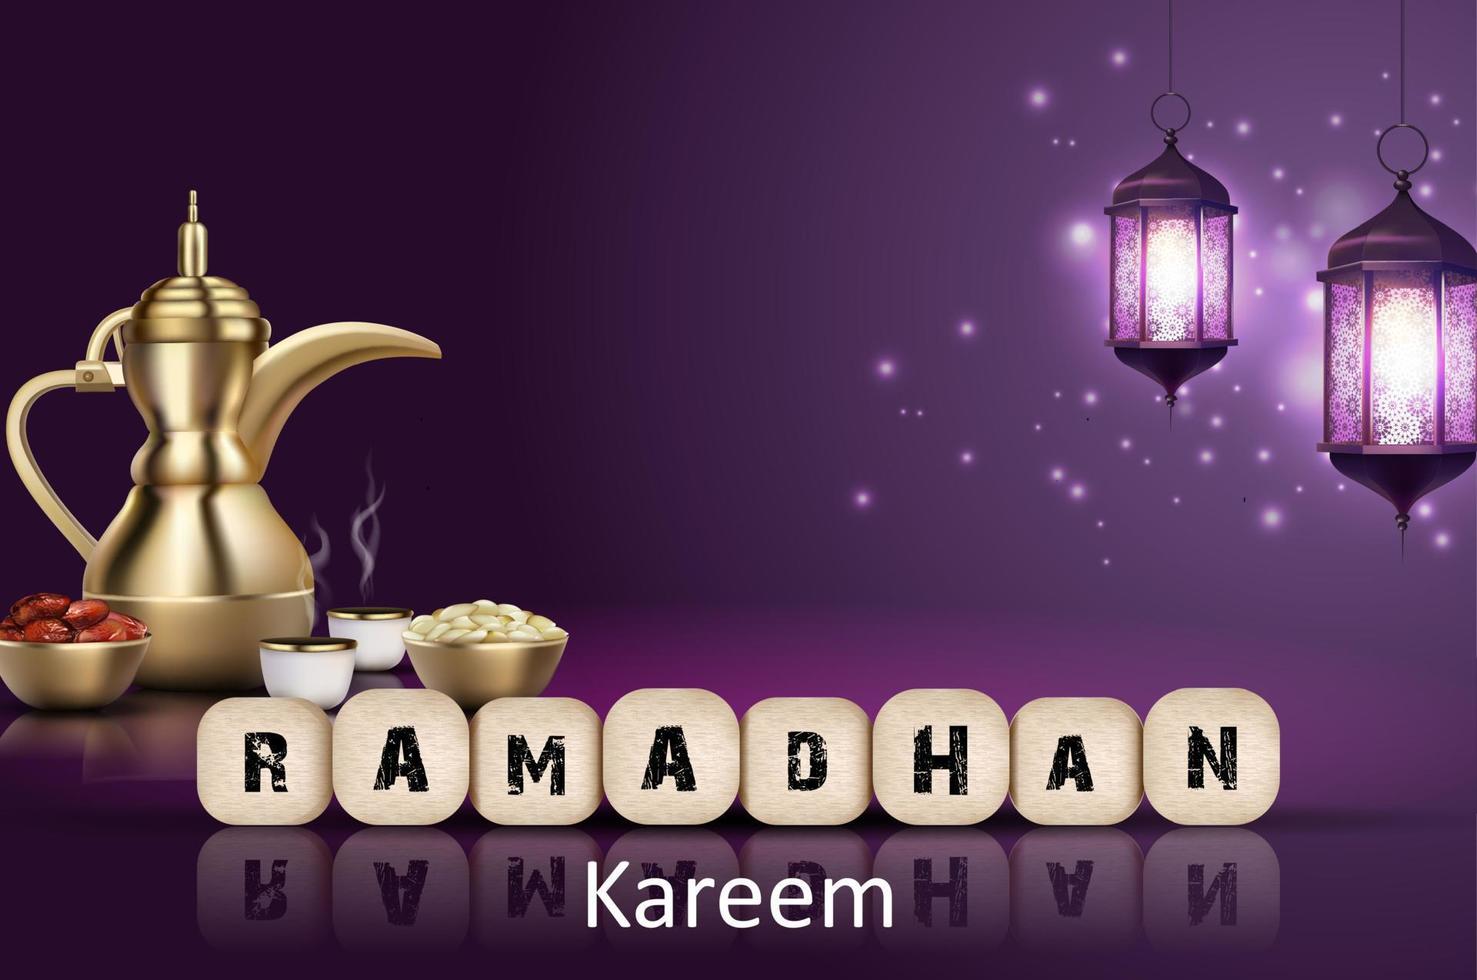 Ramadan kareem achtergrond. iftar partij met traditioneel koffie pot, droog datums en lantaarns hangende in een Purper gloeiend achtergrond vector